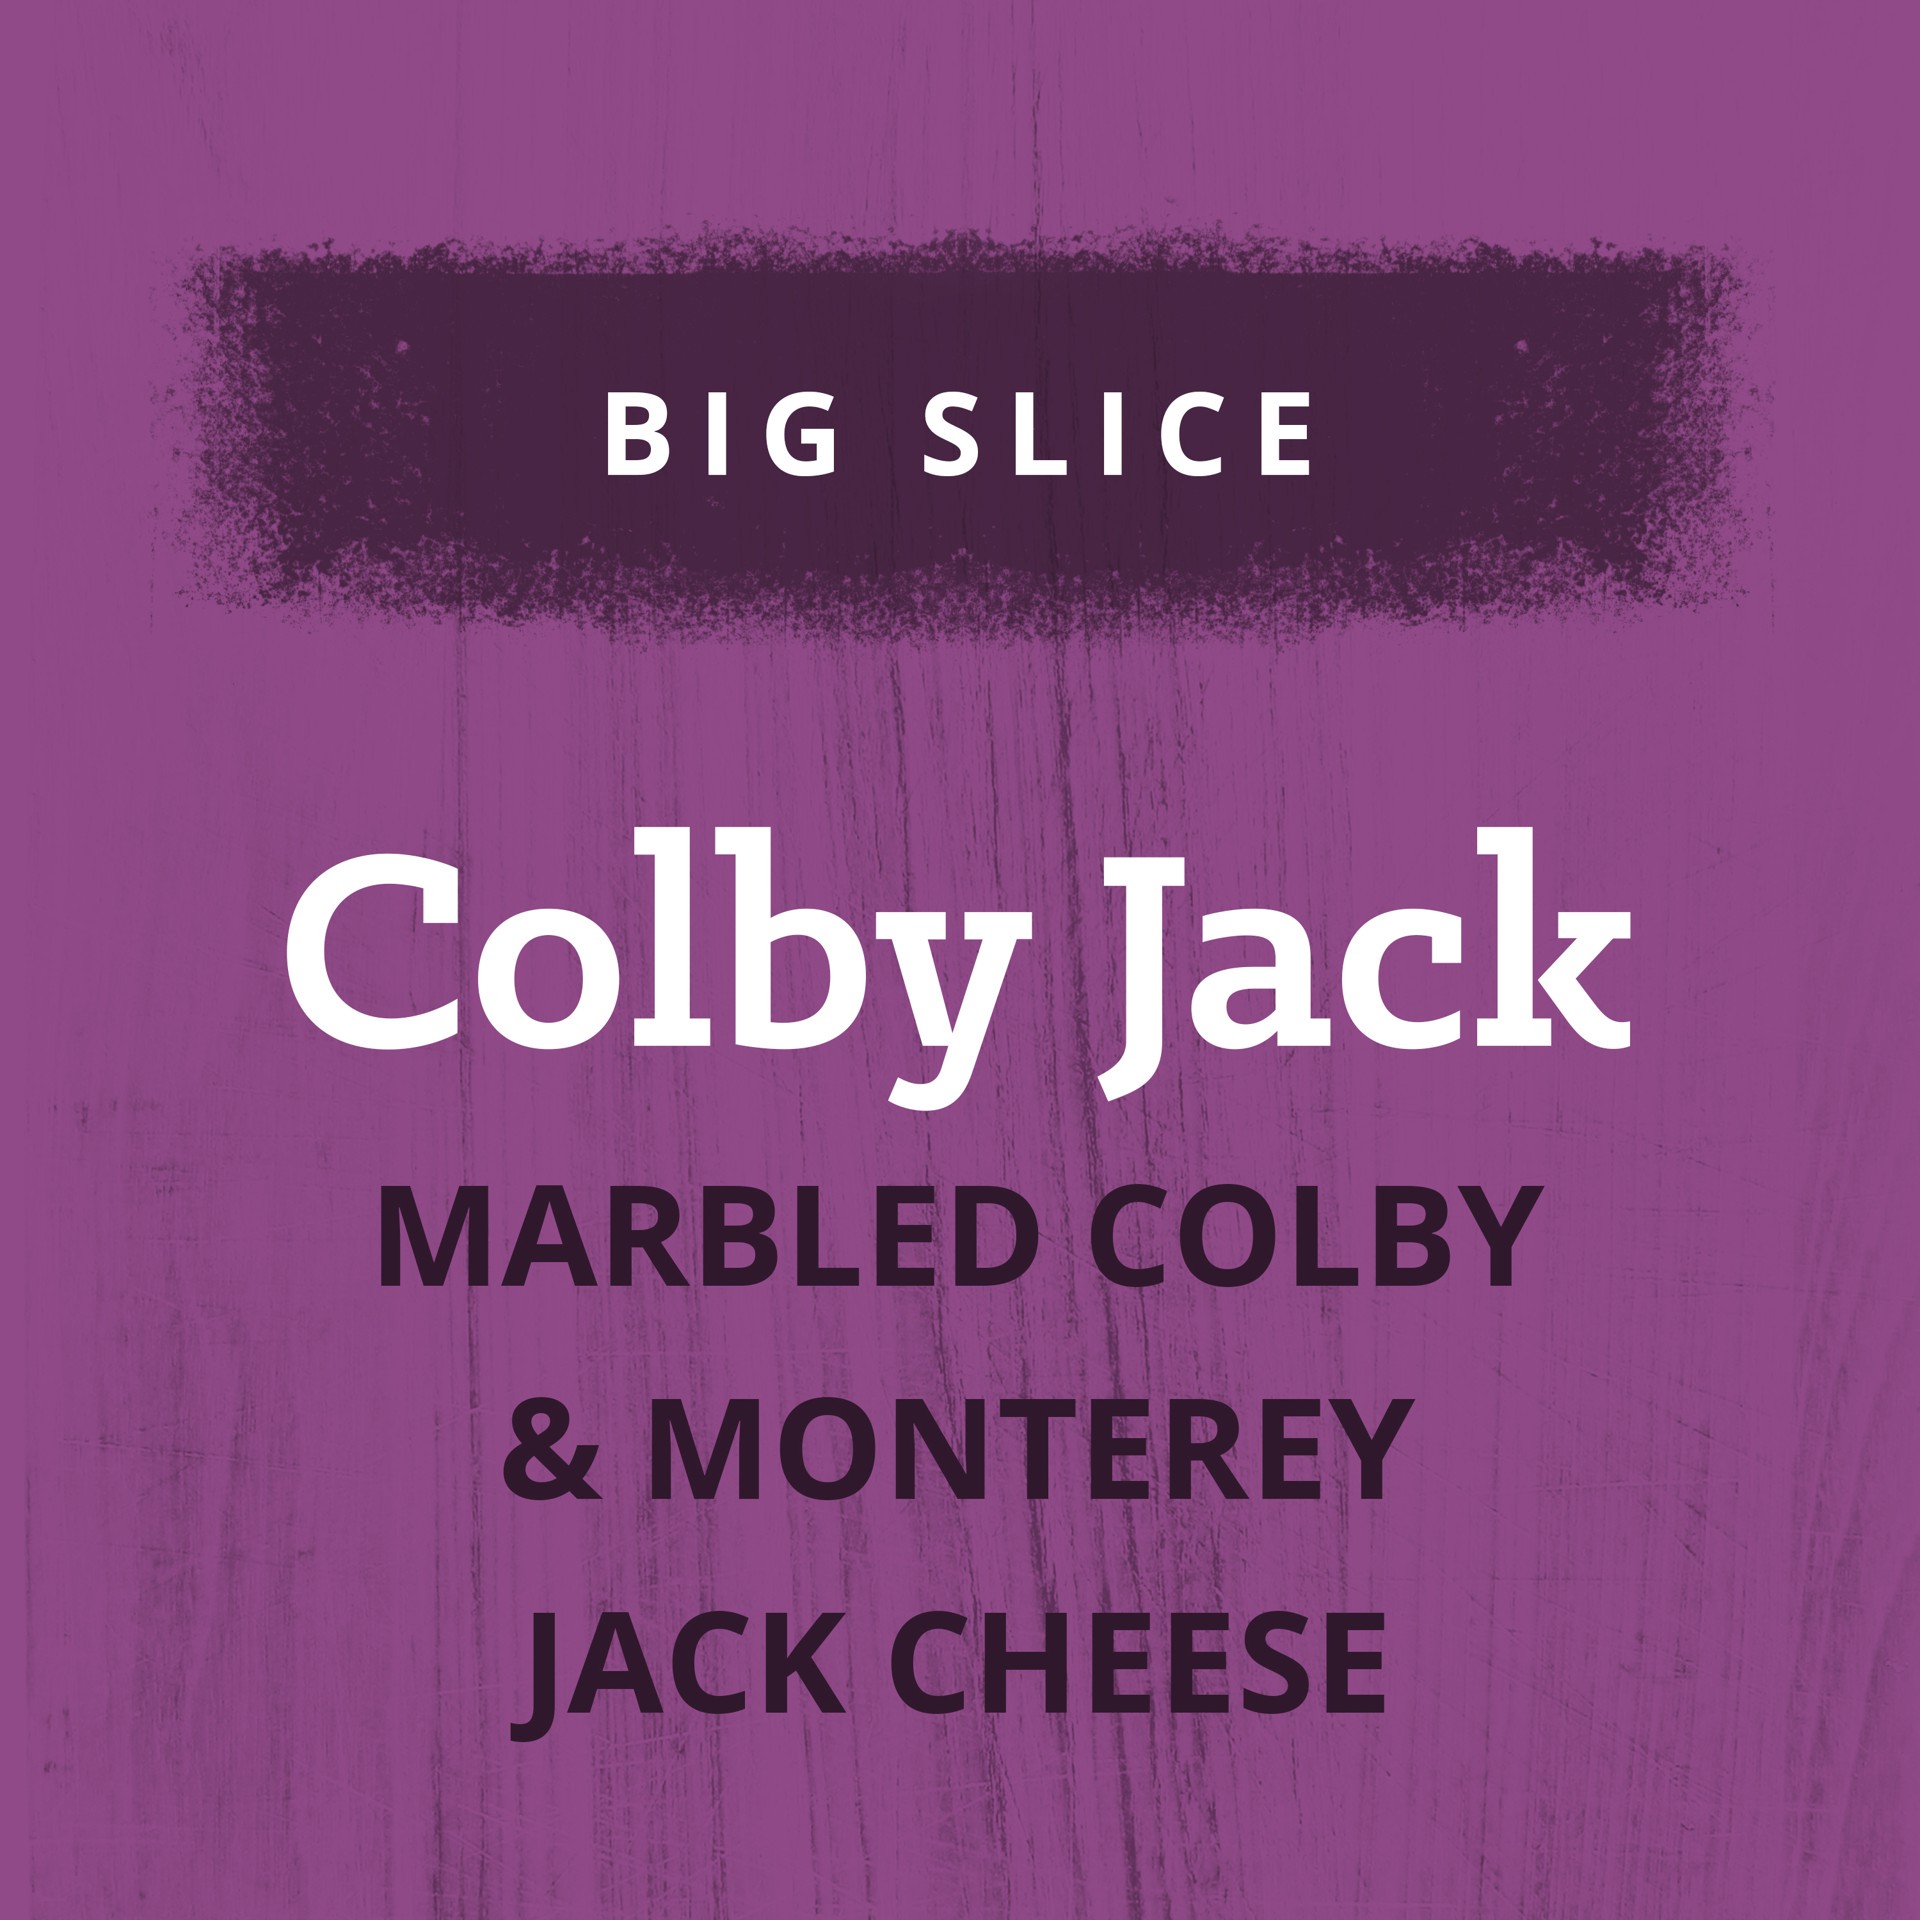 slide 4 of 10, Kraft Big Slice Colby Jack Marbled Cheese Slices, 10 ct Pack, 8 oz